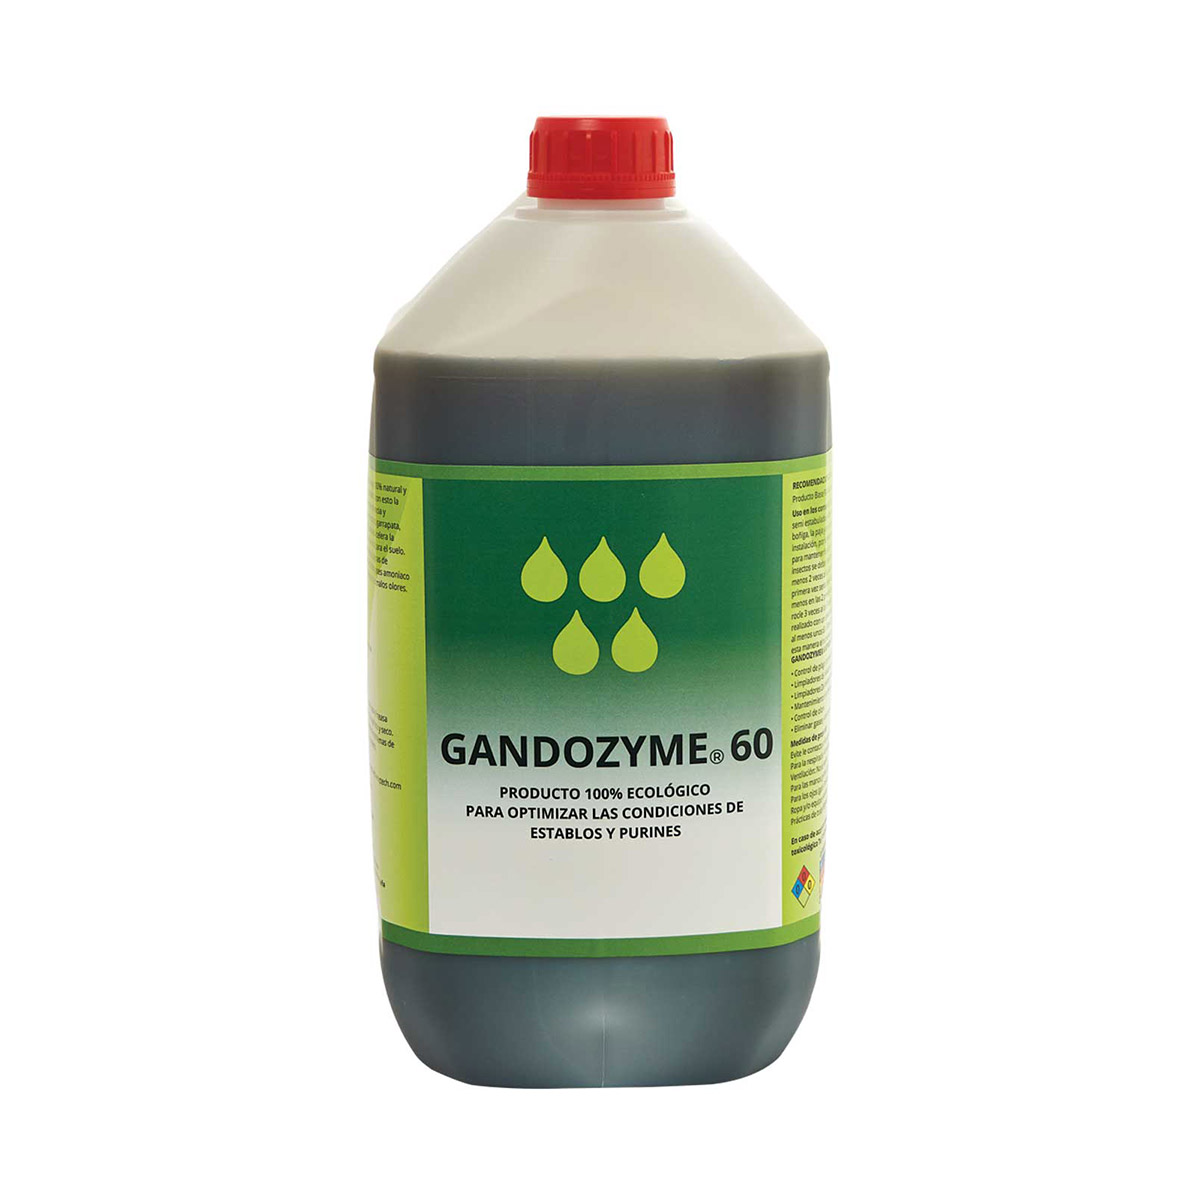 GANDOZYME® 60